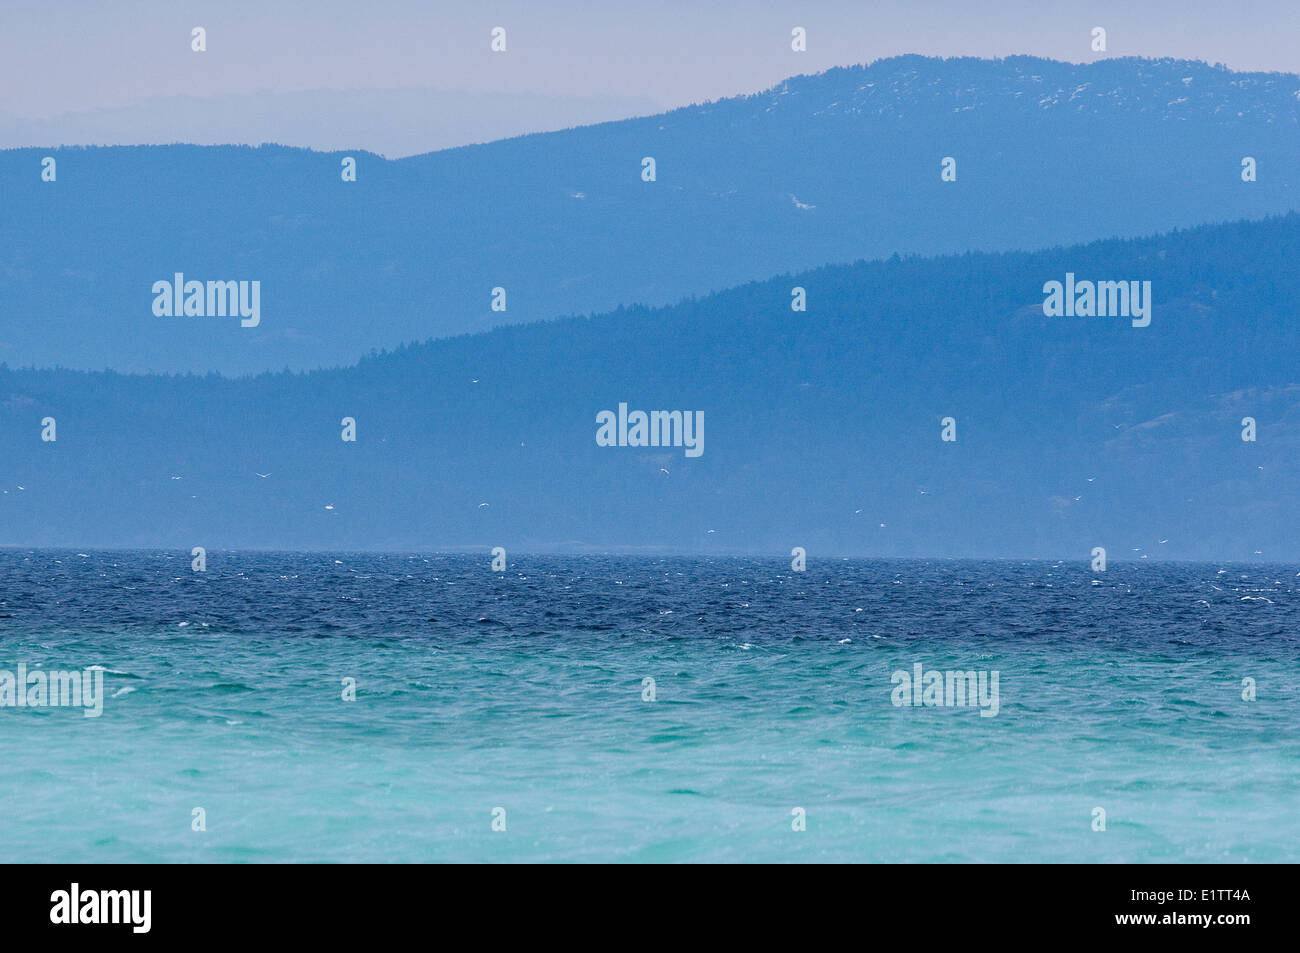 Aringa spawn trasforma le acque in una bella tela di impercettibili sfumature e colori dell'isola di Vancouver, British Columbia, Canada Foto Stock